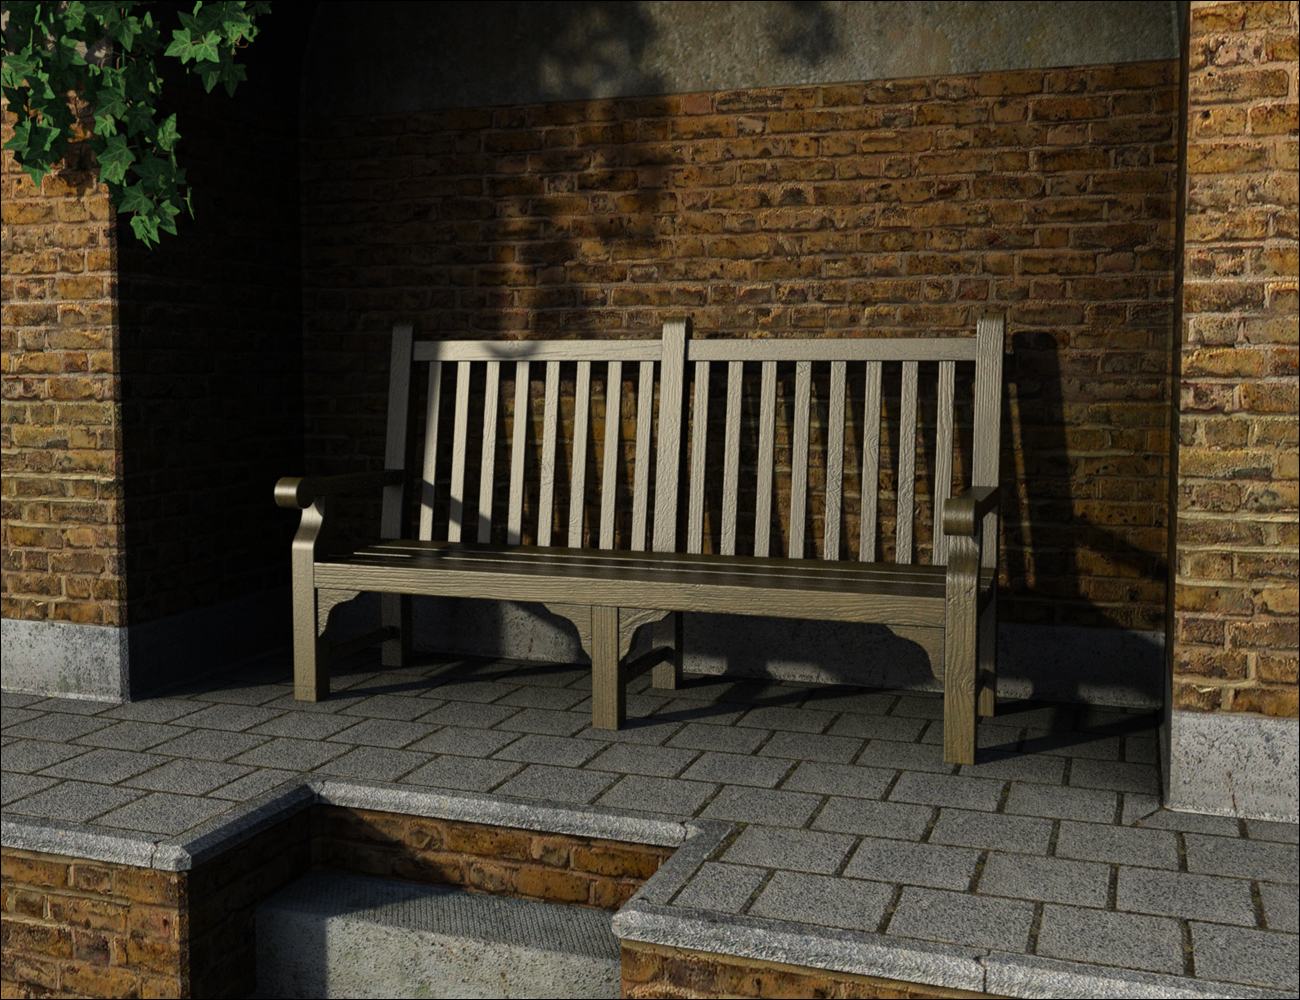 Premium Props - Park Bench by: MindVision G.D.S., 3D Models by Daz 3D